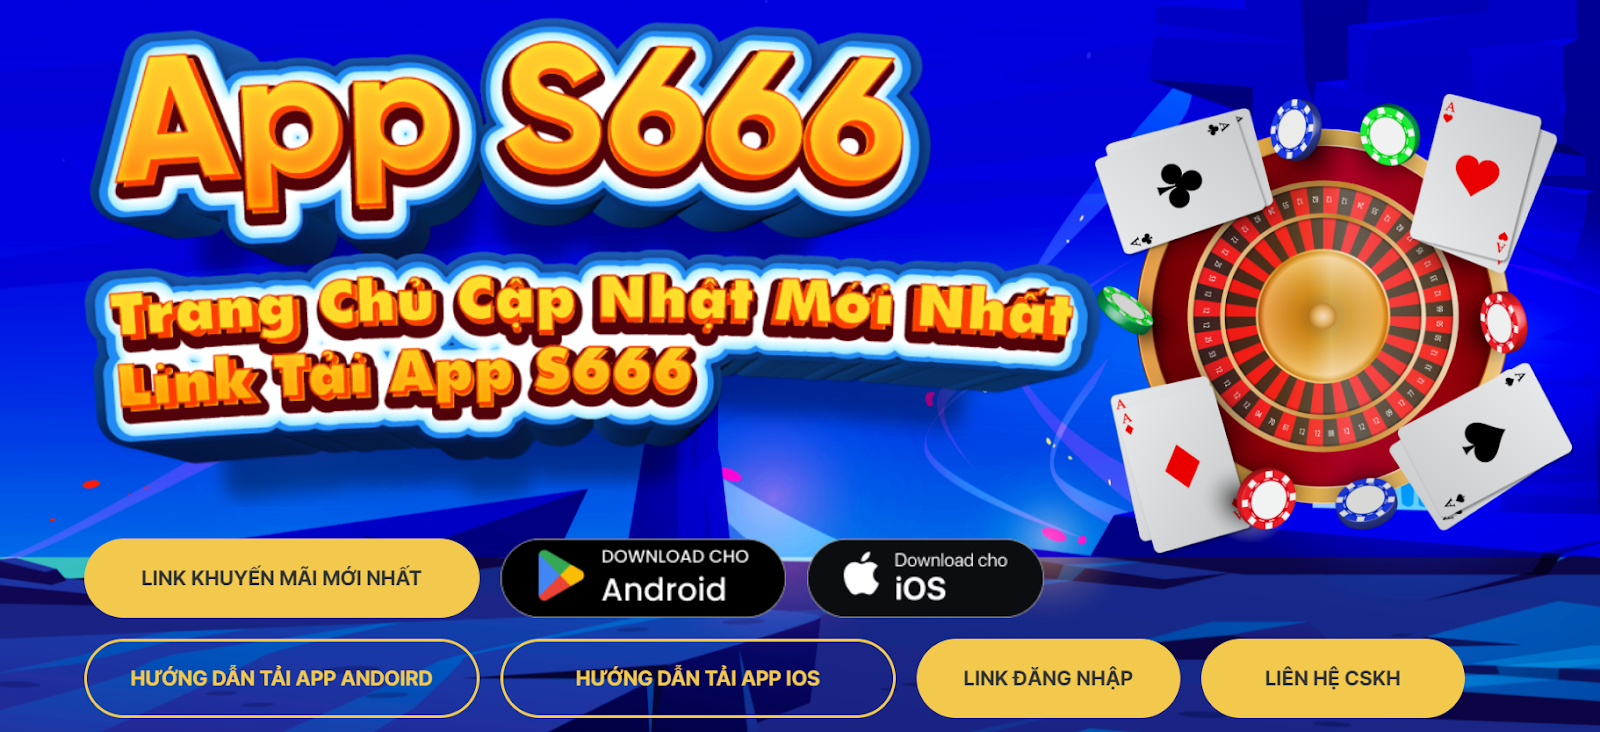 Tải app S666 siêu nhanh gọn, đơn giản mà ai cũng nên biết